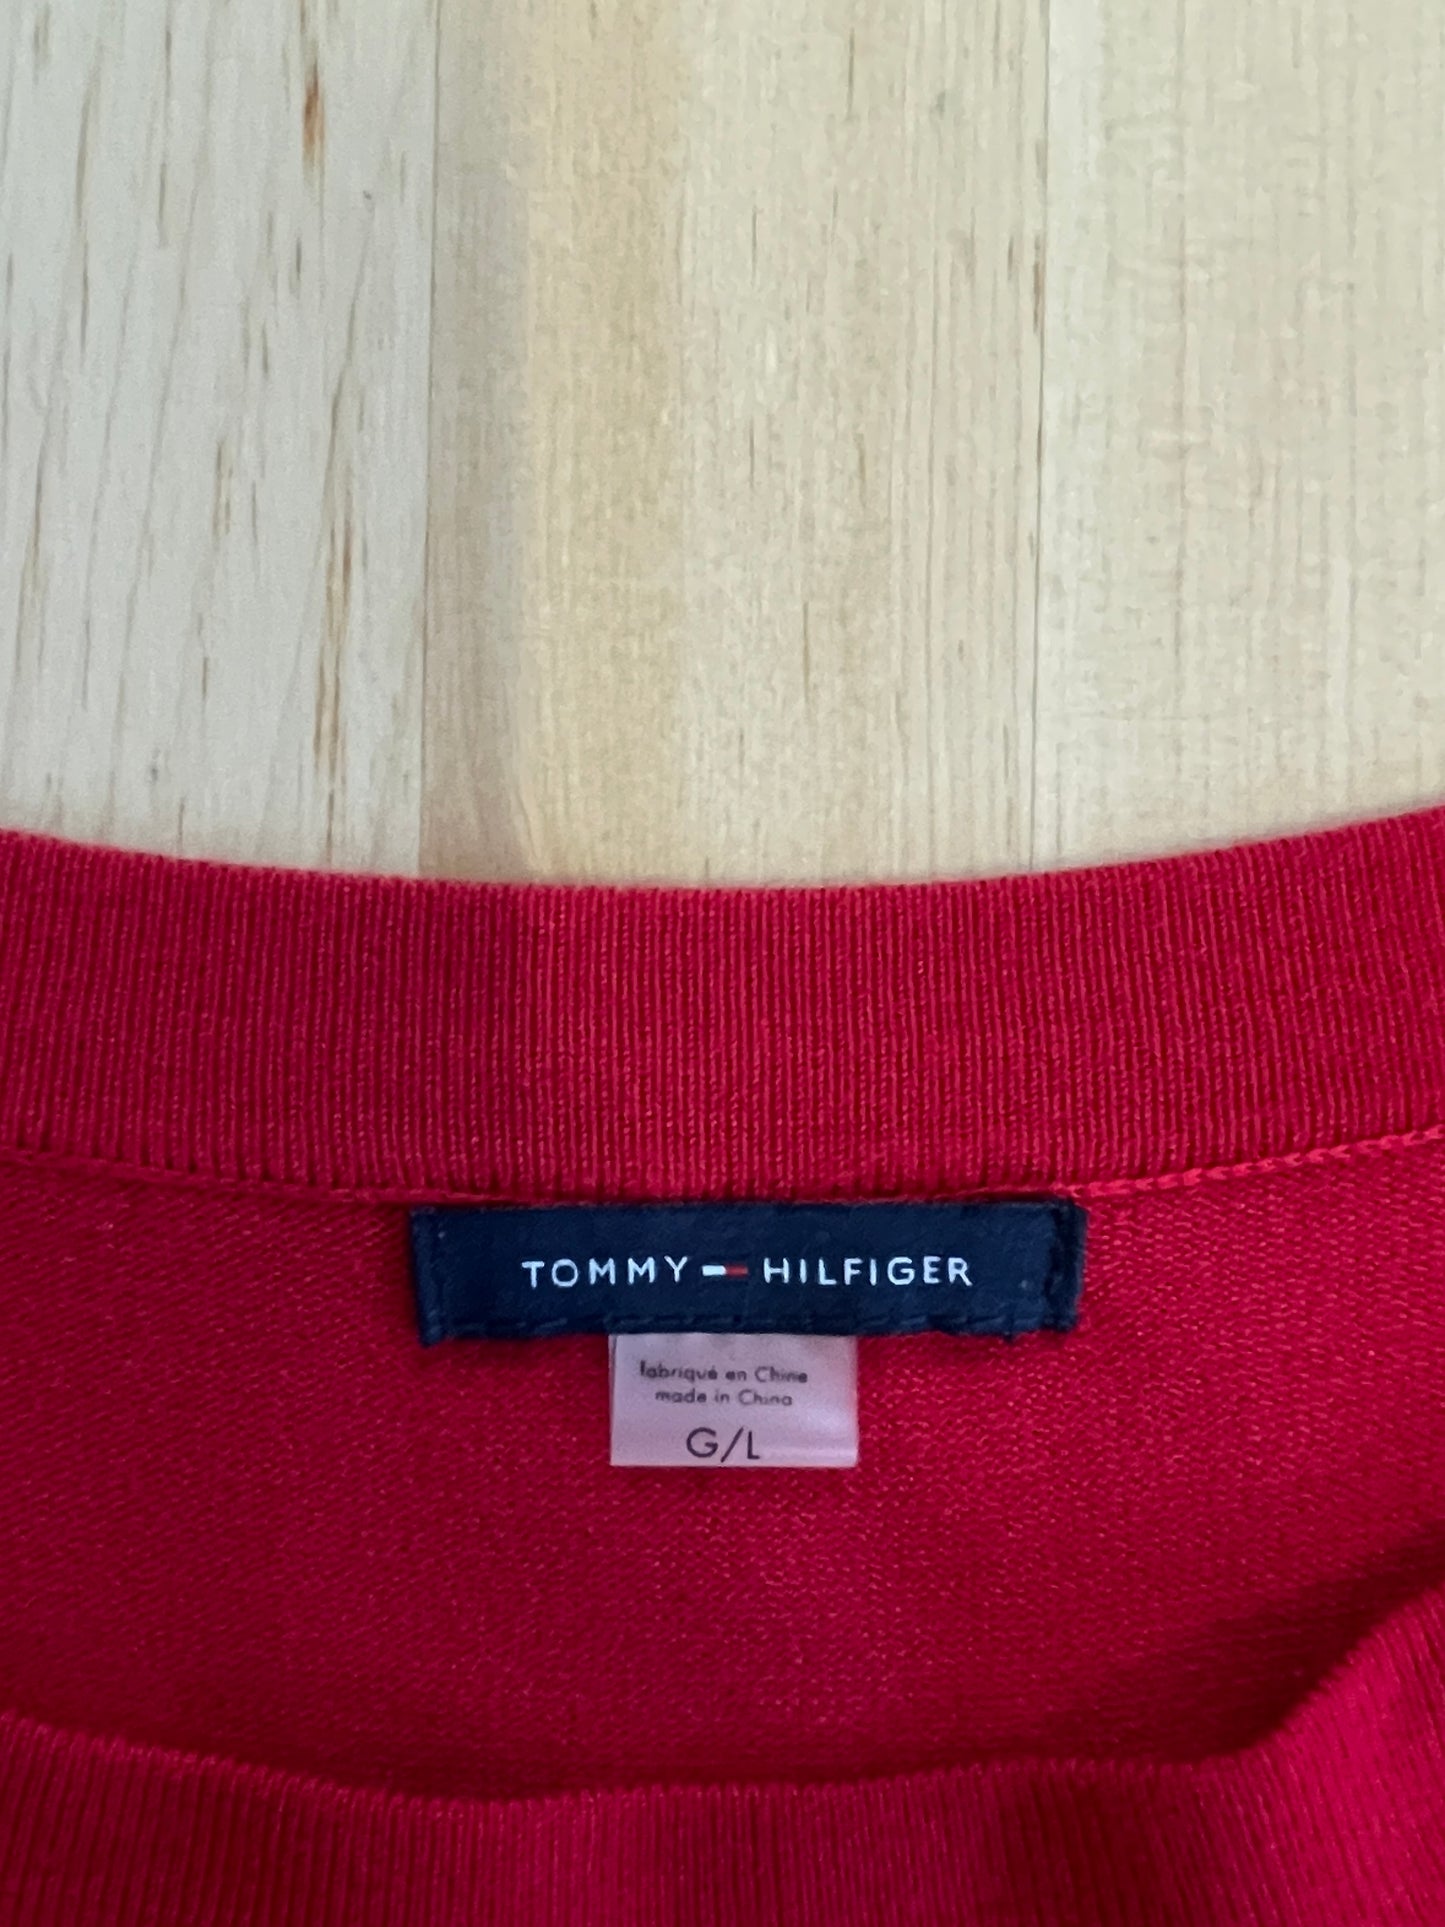 Robe rouge en tricot à oeillets dorés (M/L)